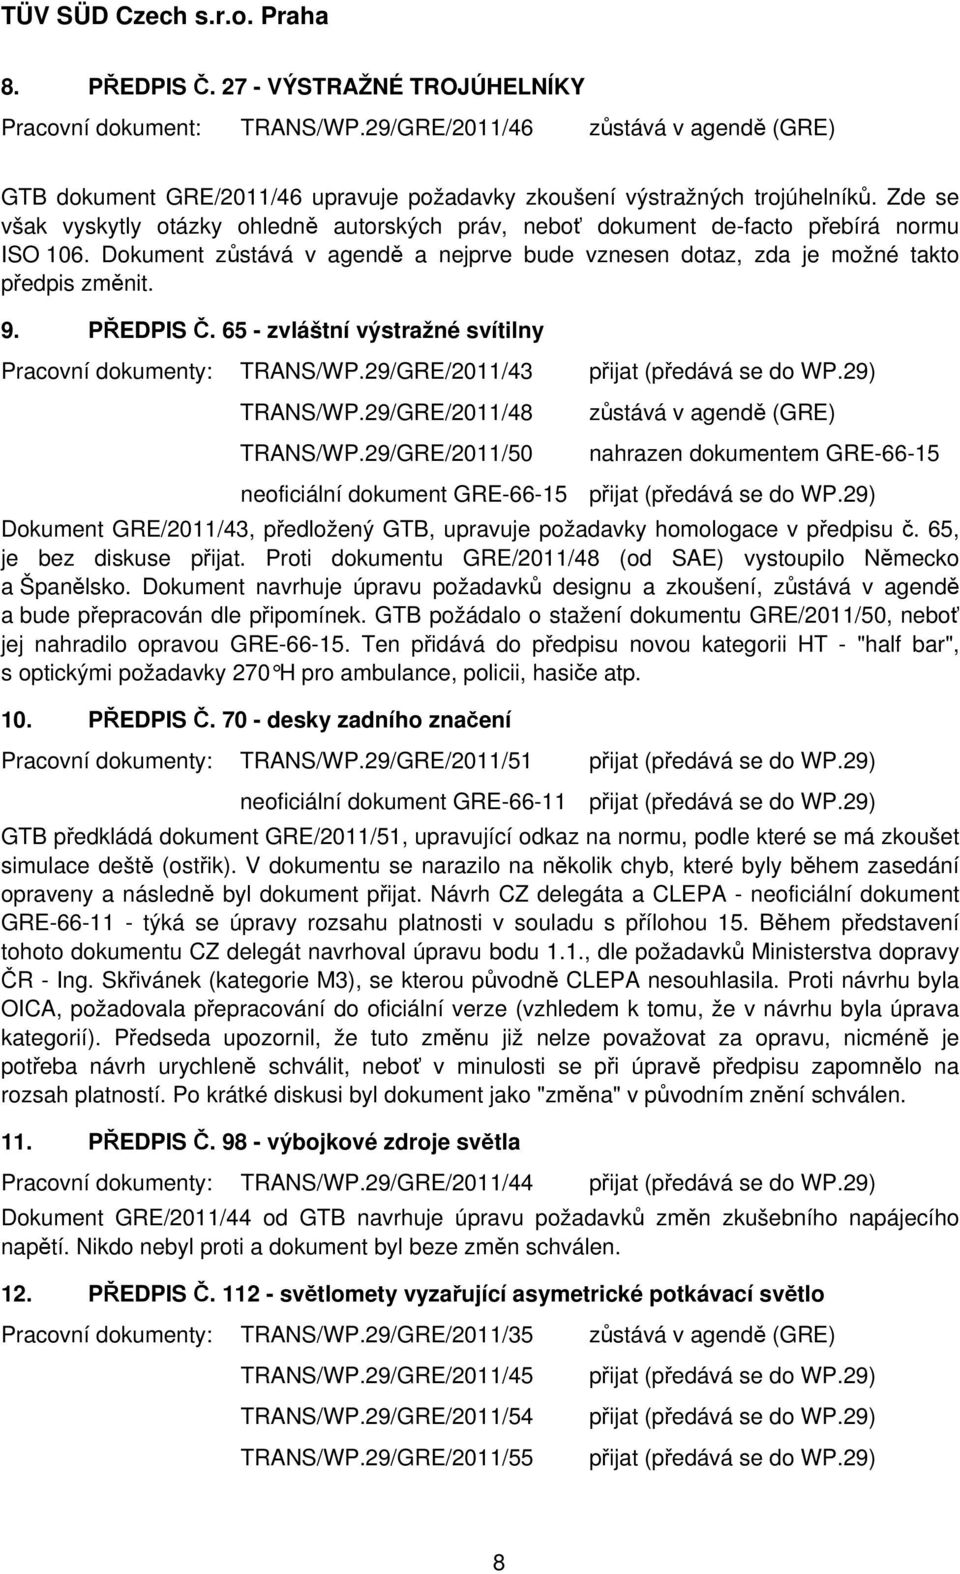 PŘEDPIS Č. 65 - zvláštní výstražné svítilny Pracovní dokumenty: TRANS/WP.29/GRE/2011/43 TRANS/WP.29/GRE/2011/48 TRANS/WP.